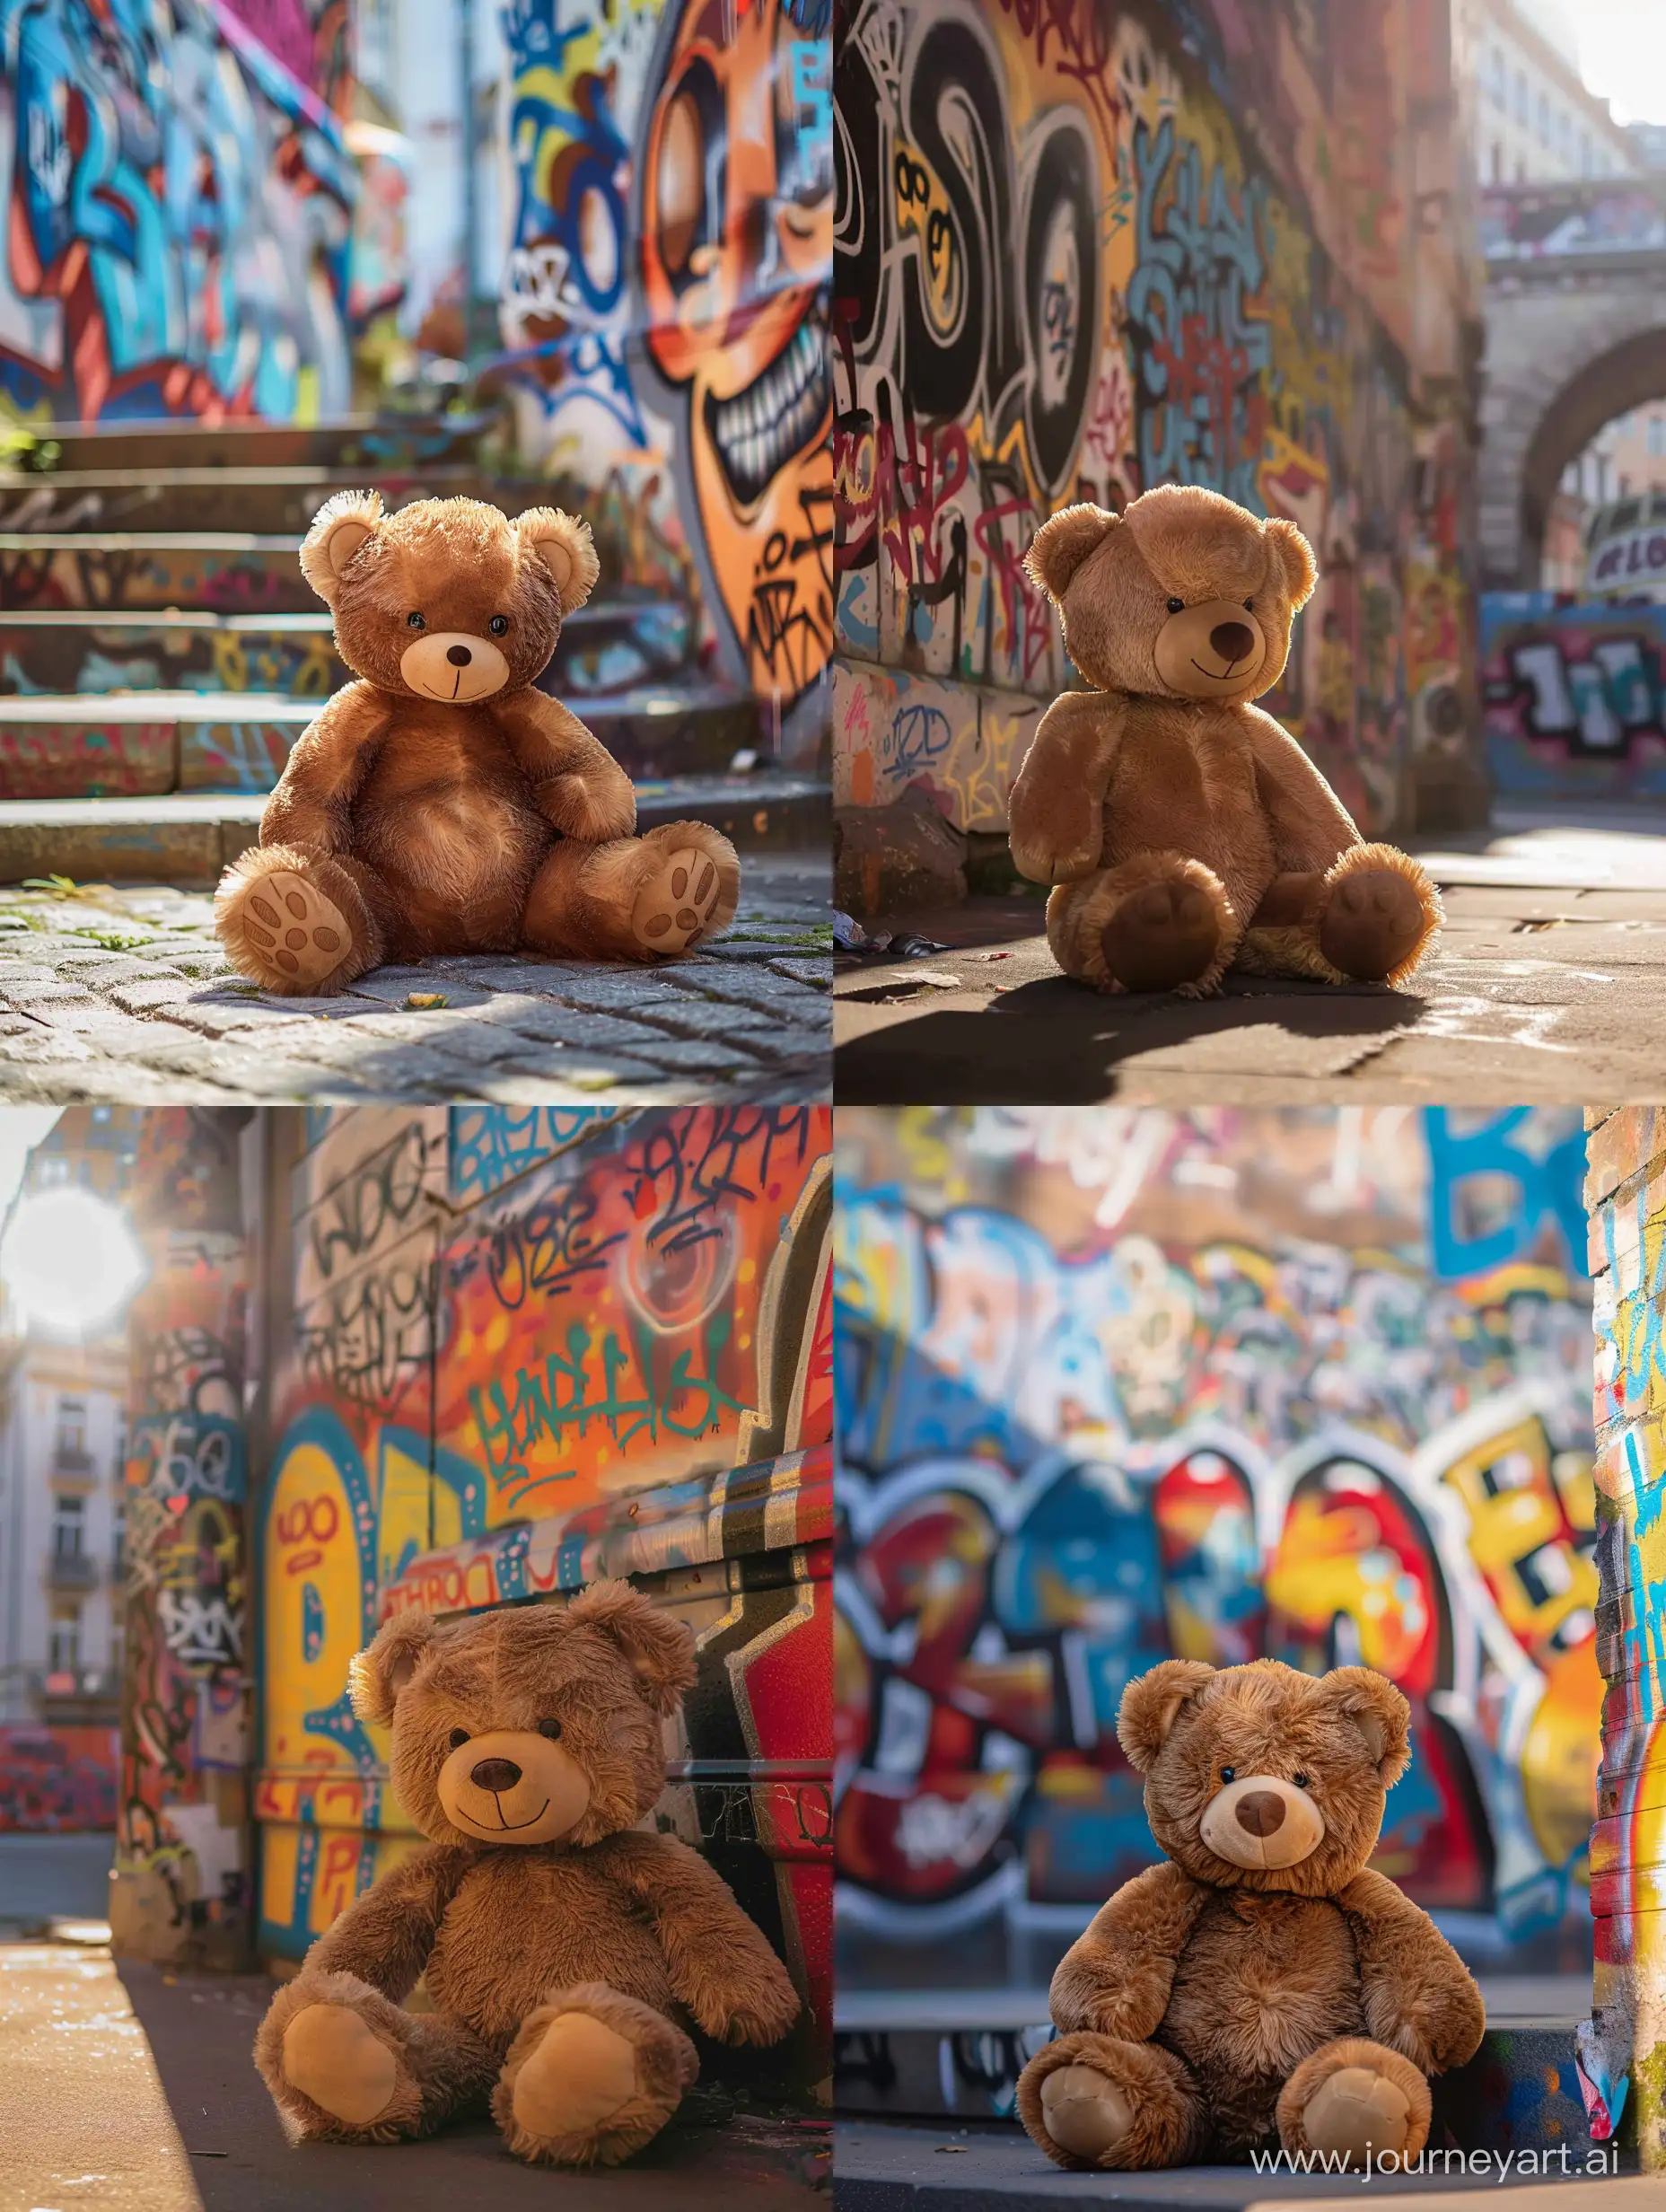 Стиль плакат, стиль иллюстрация, коричневый плюшевый медведь фотографируется на фоне уличного граффити, цвета яркие, солнечный полдень, стиль символизм, стиль постер